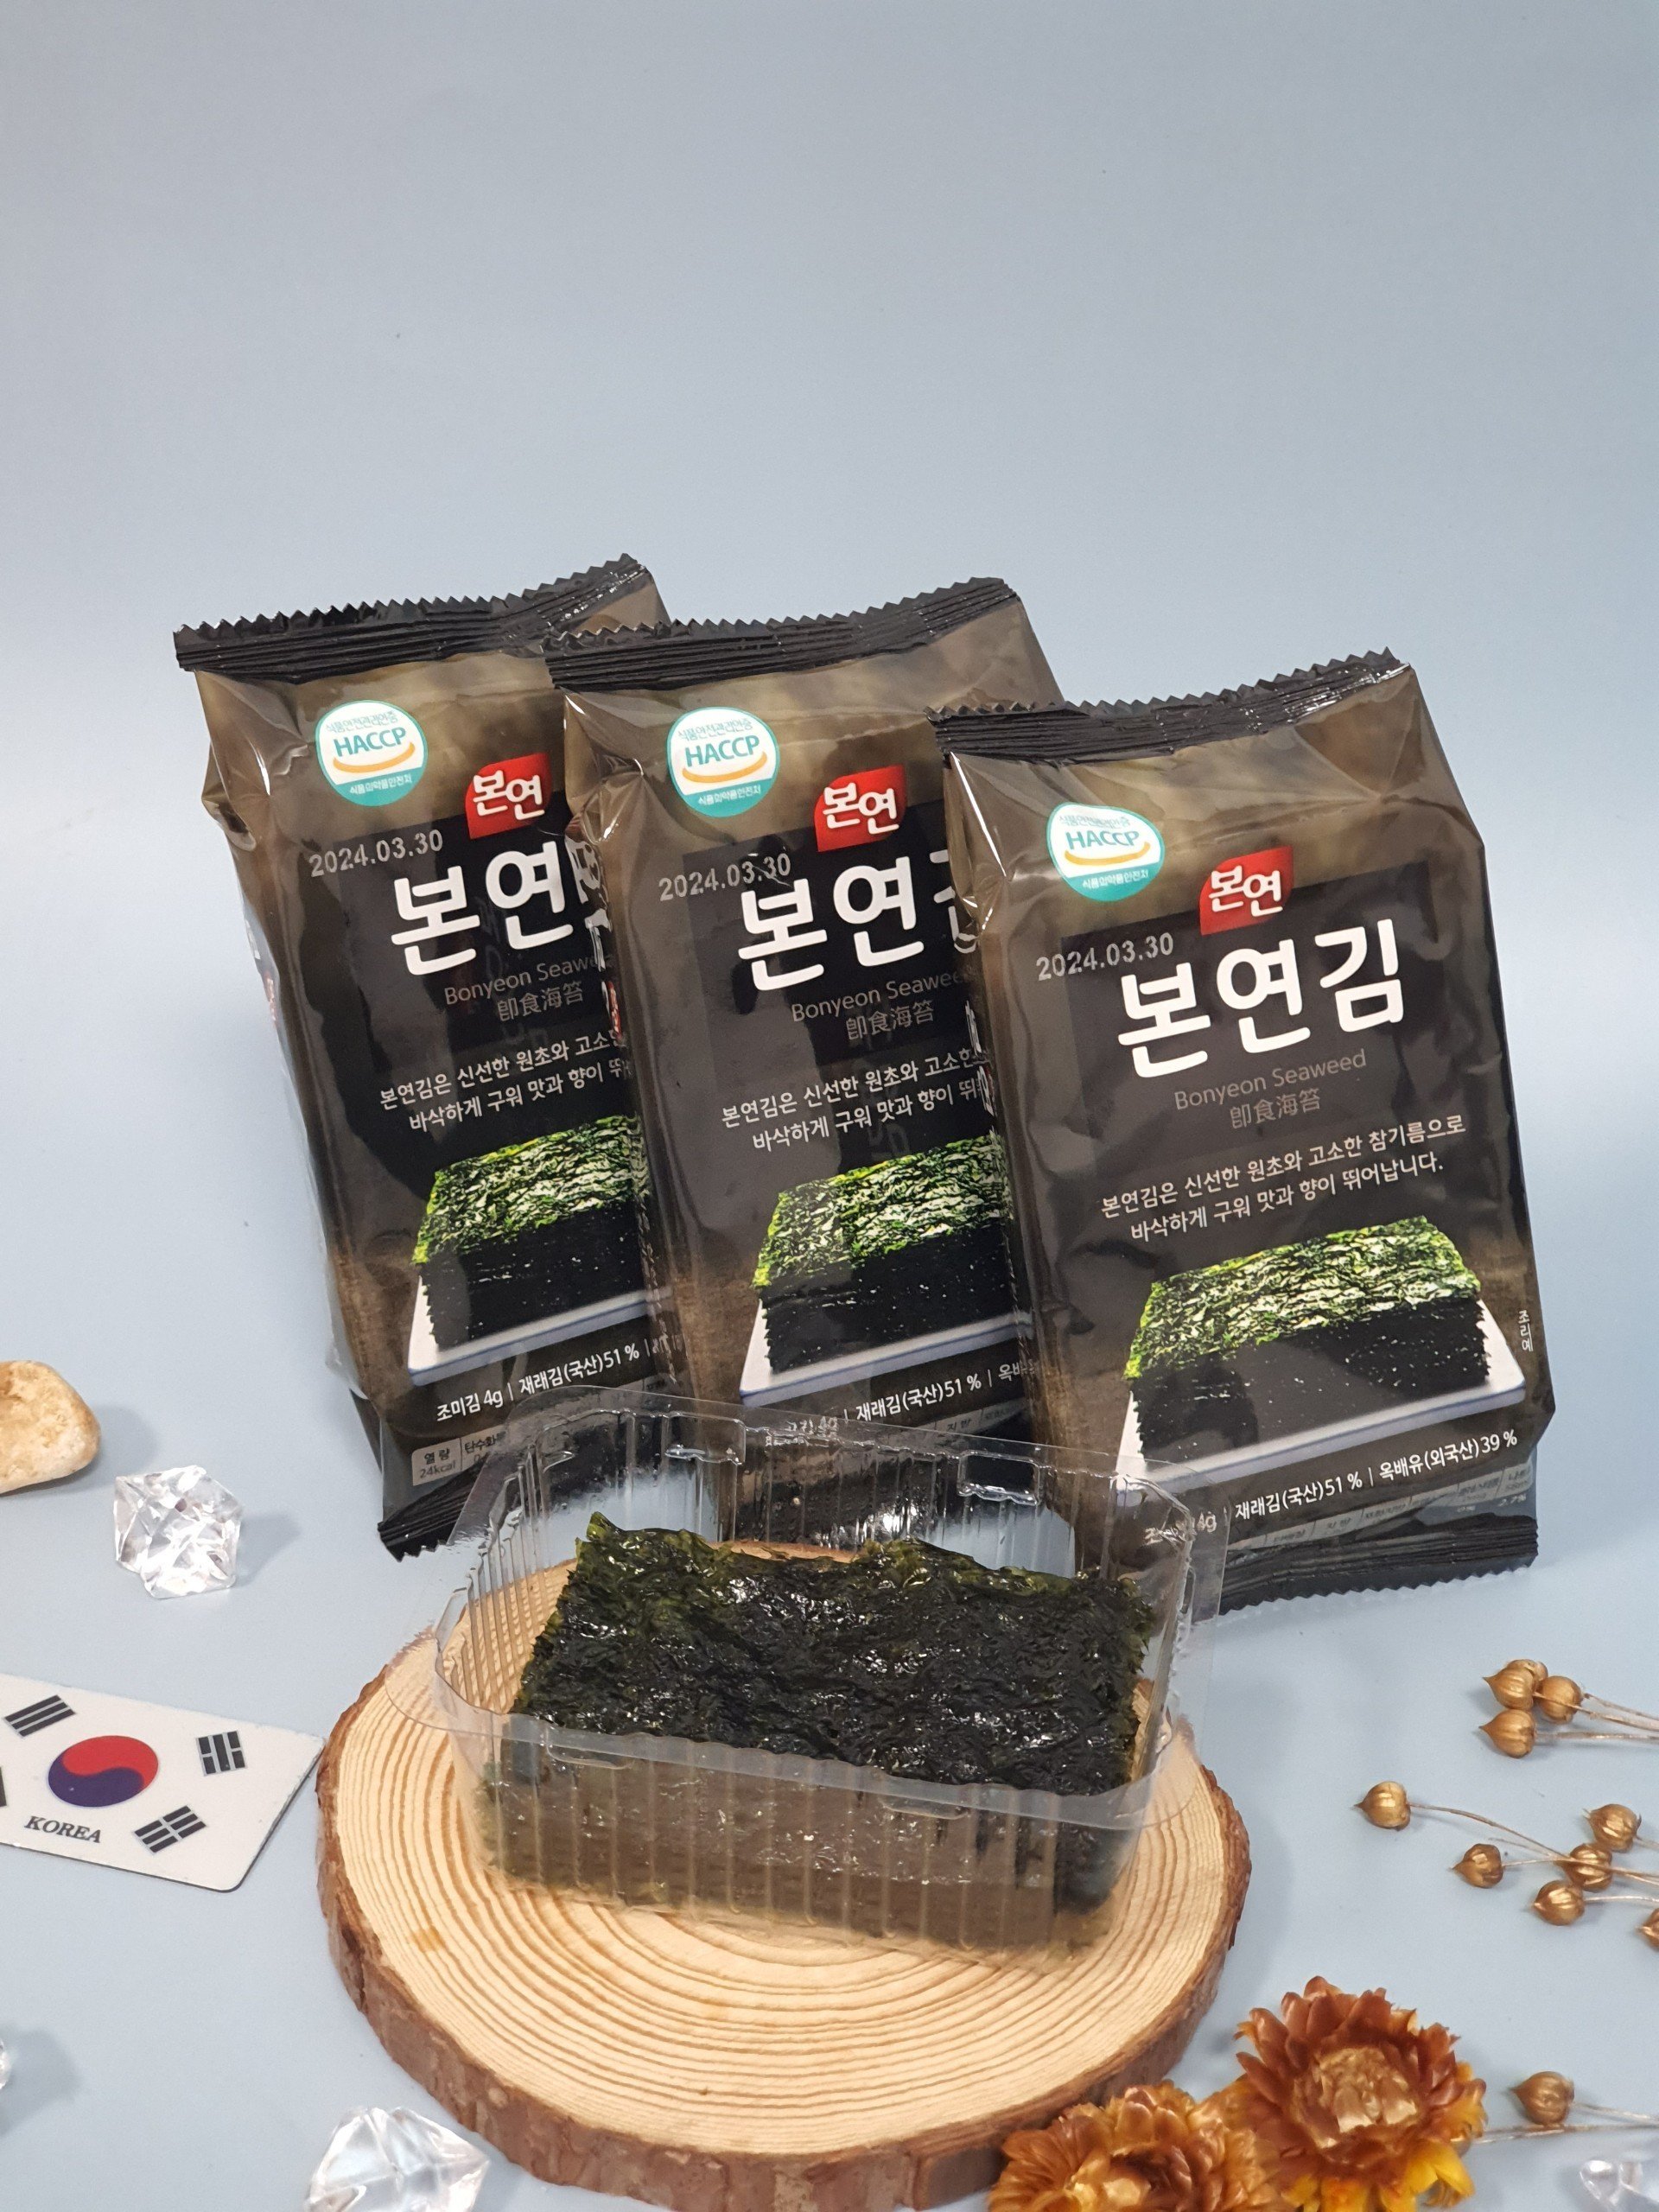 Rong biển ăn liền Hàn Quốc Bonyeon Sea Laver phỐ thẢo mỘc